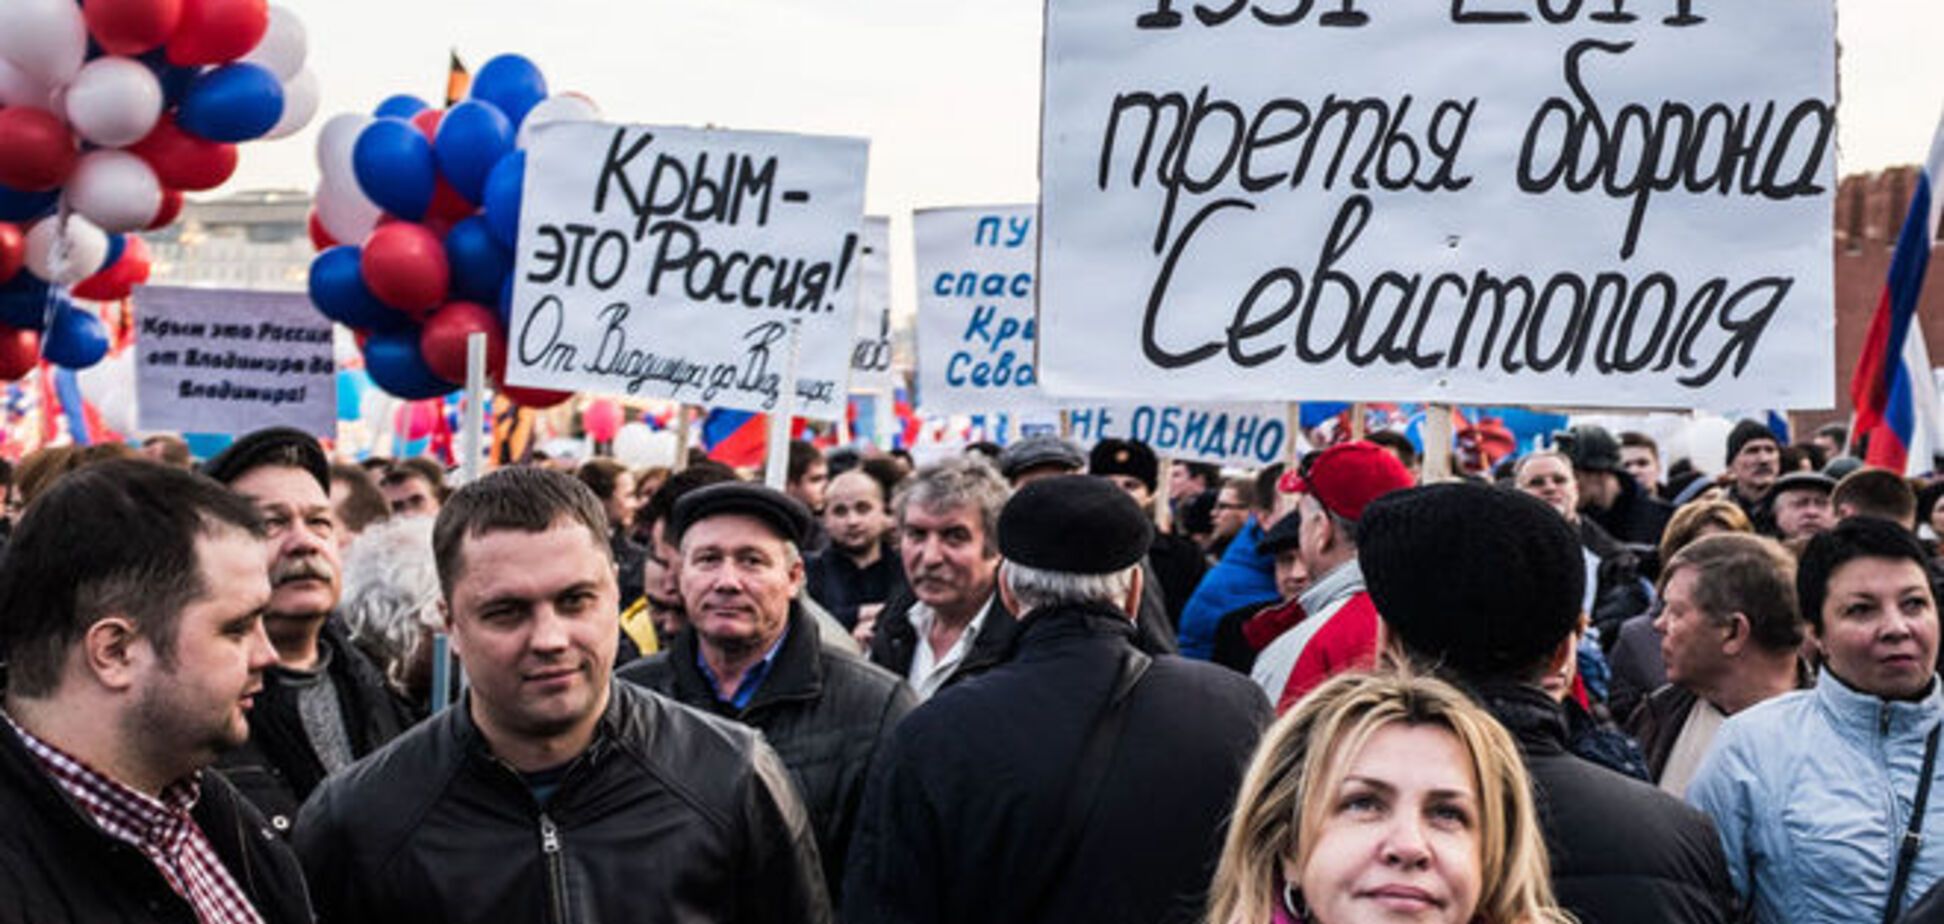 Конфуз перед 'кримським шабашем' в Москві: ведучий вимагав гонорар у доларах